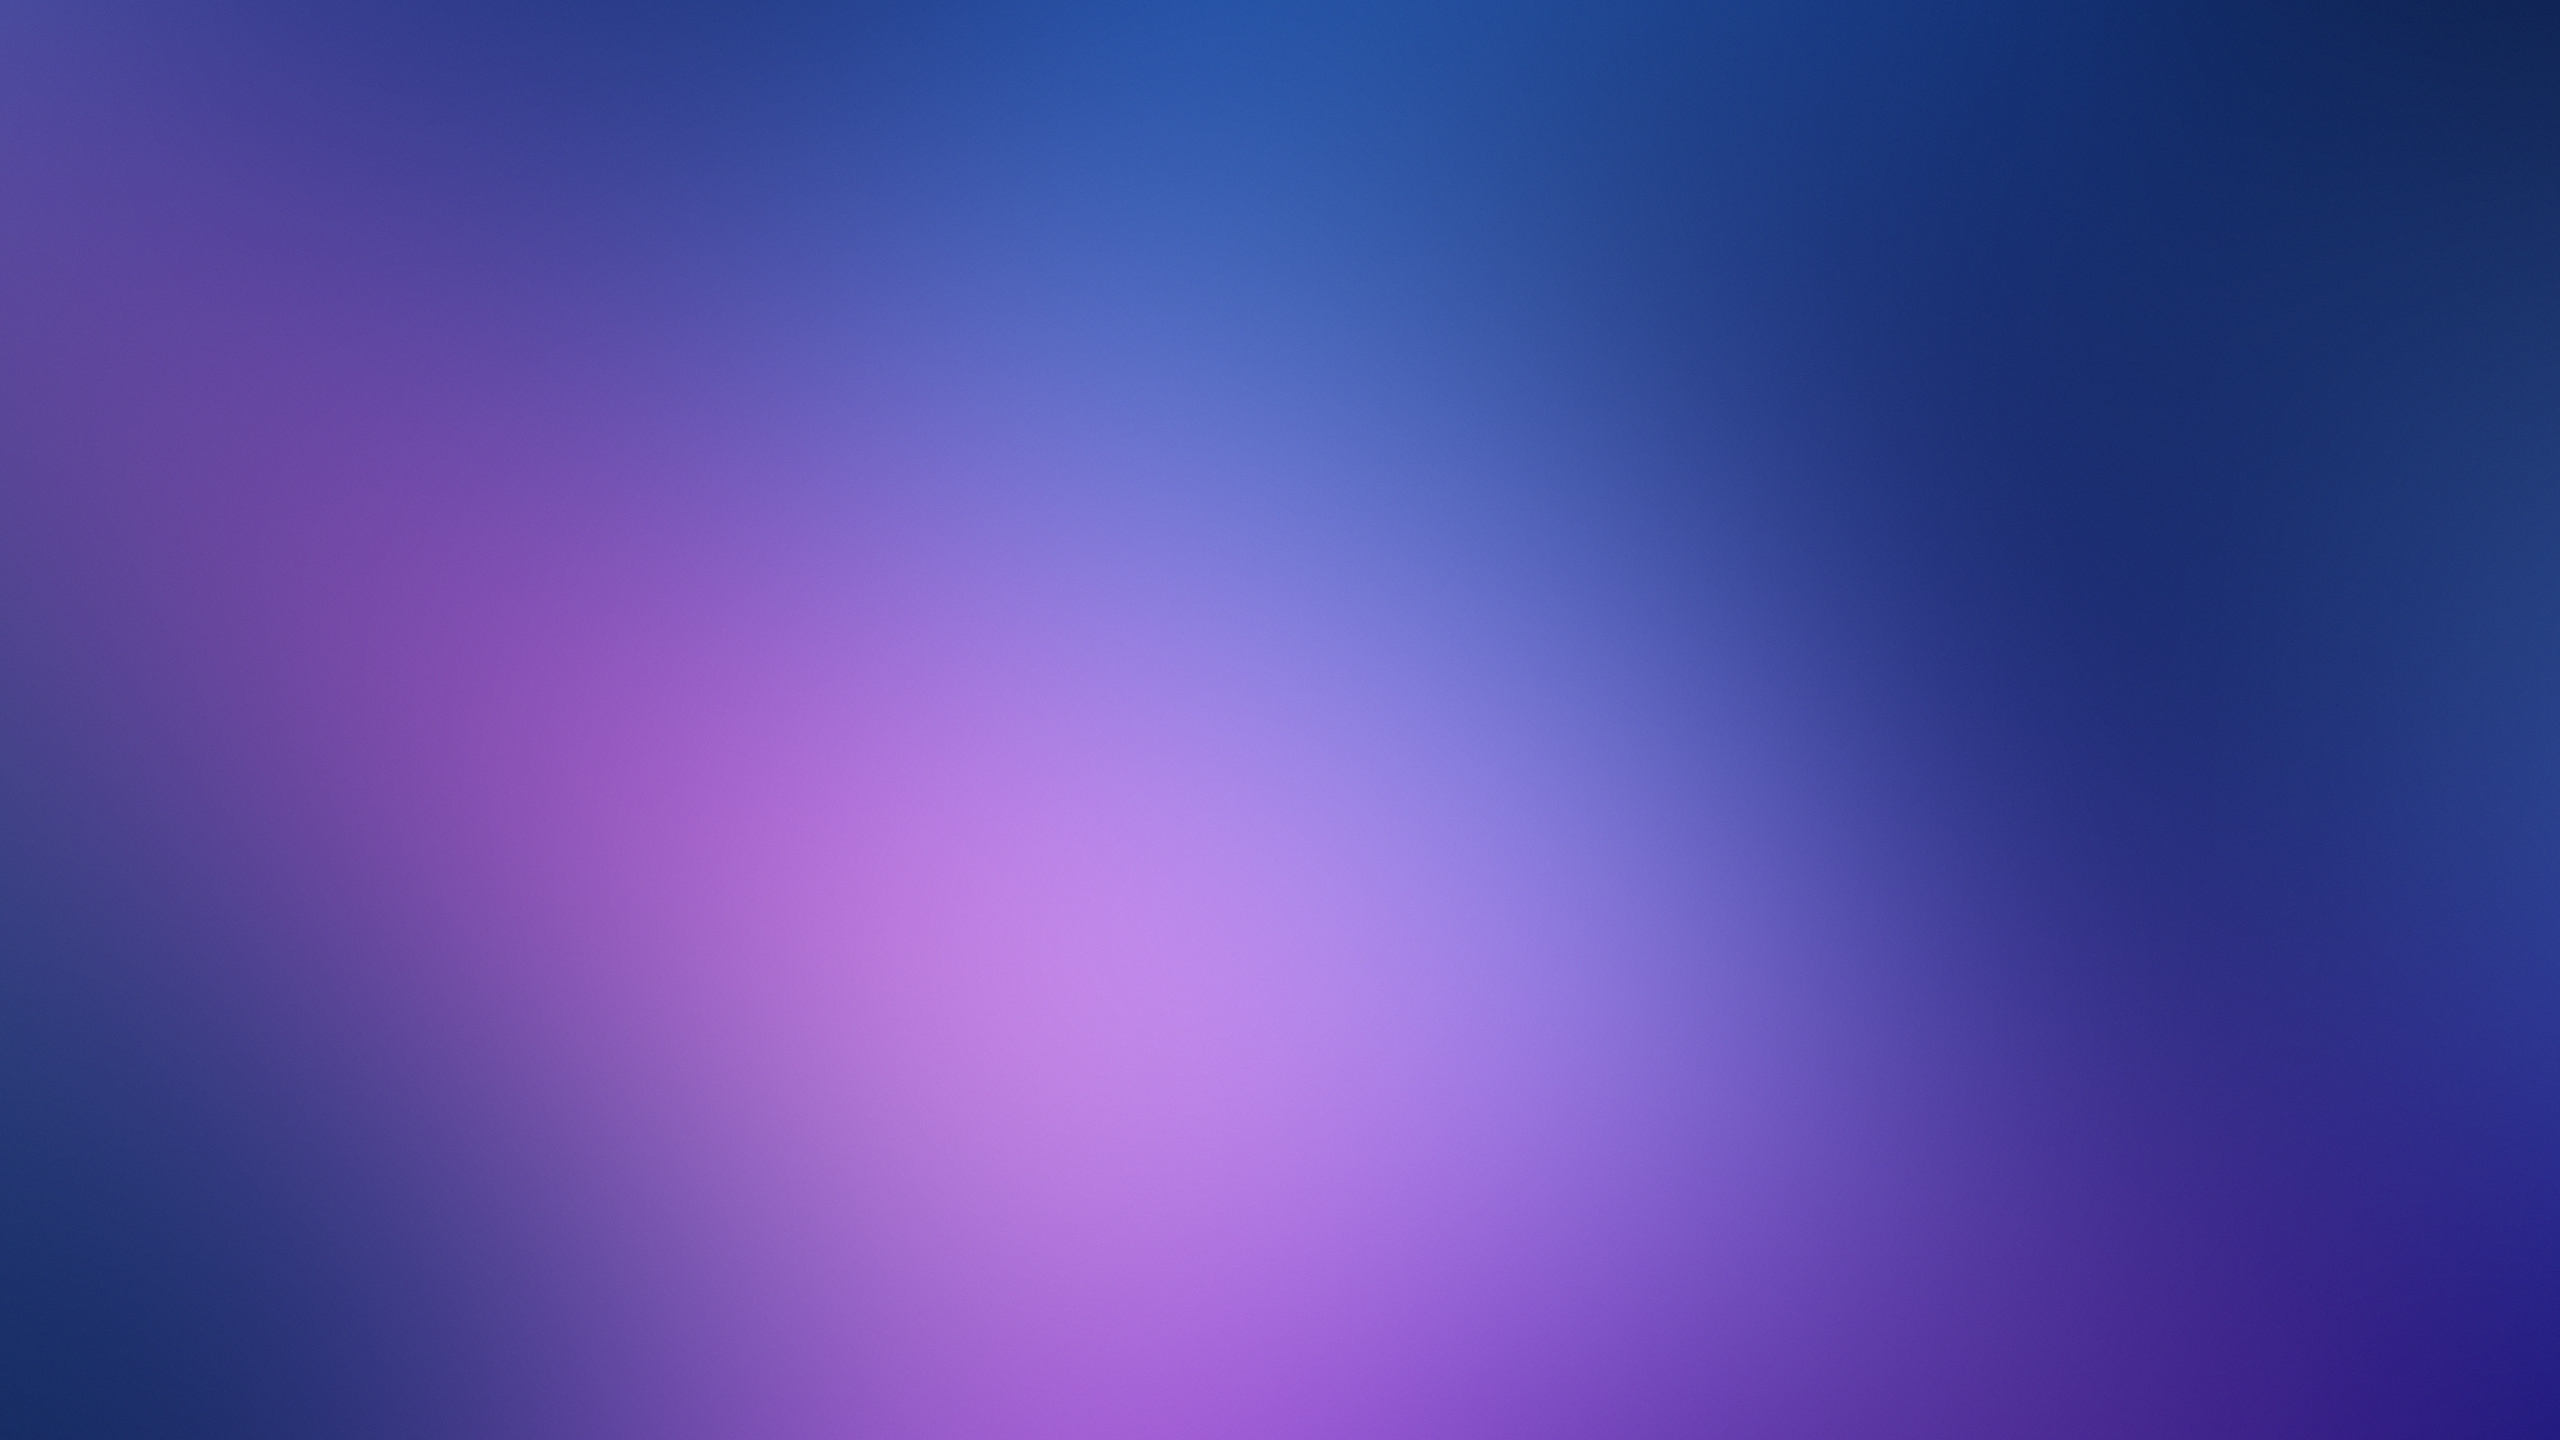 63711 Purple Plain Gradient Backgrounds Images Stock Photos  Vectors   Shutterstock